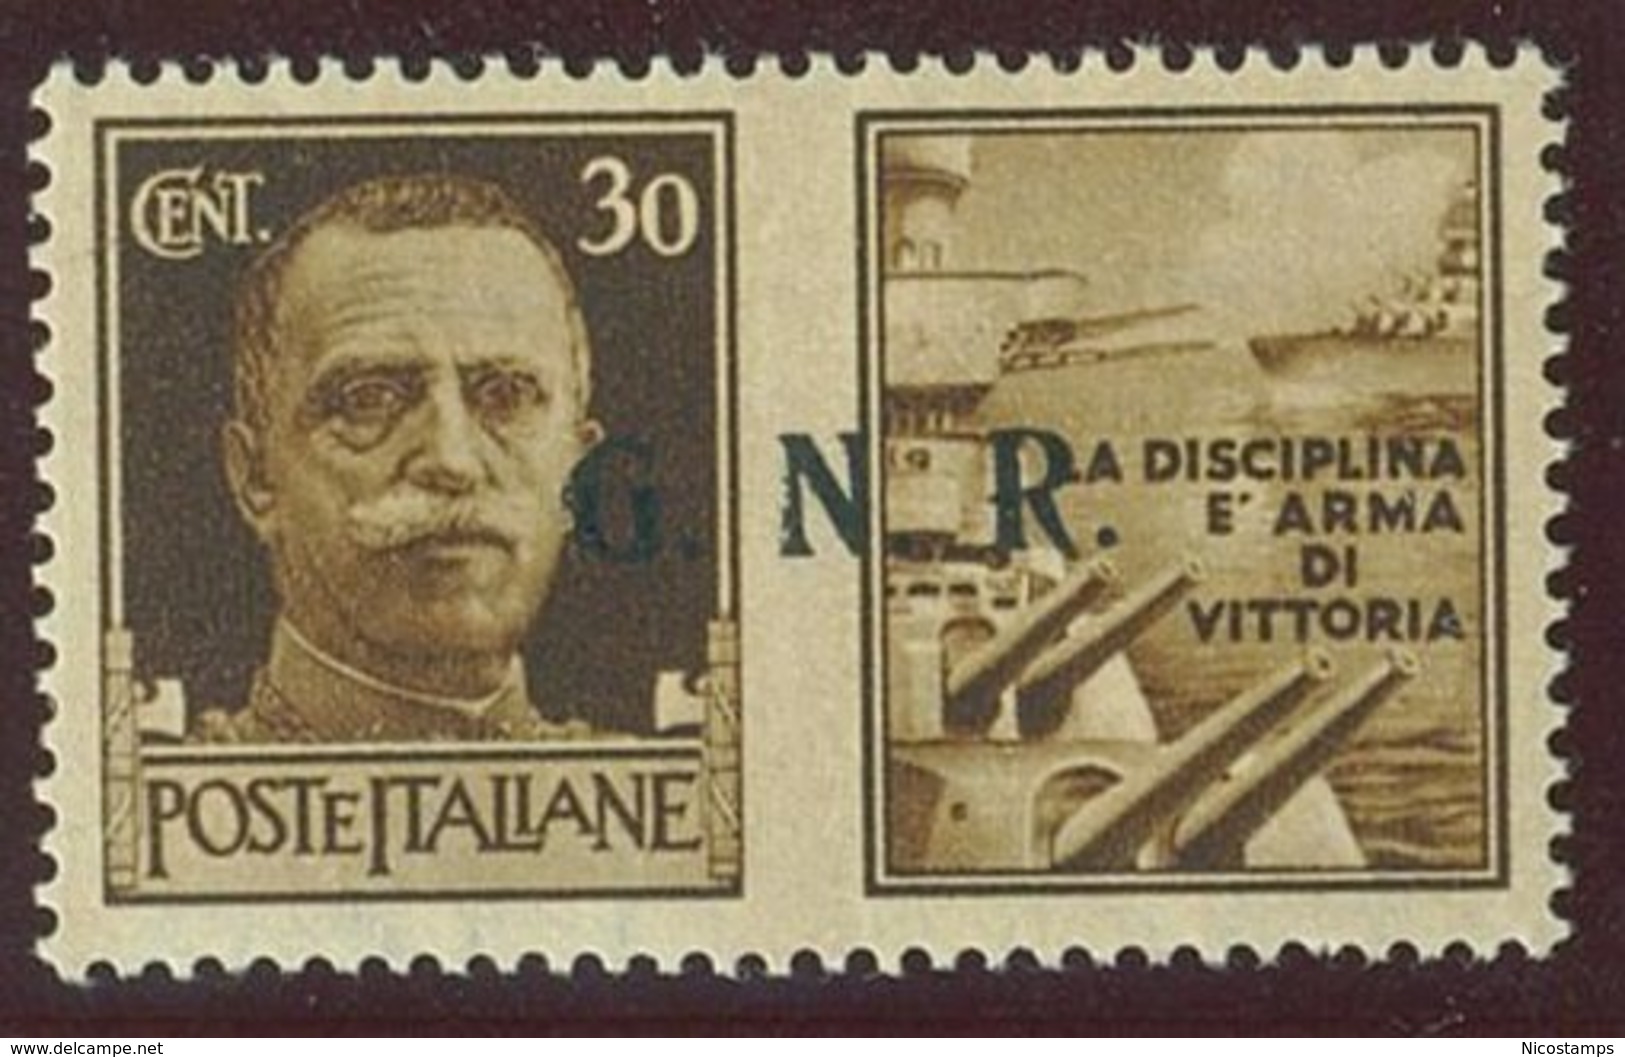 ITALIA REPUBBLICA SOCIALE ITALIANA (R.S.I.) SASS. P.G. 17/IIIei  NUOVO - Propaganda Di Guerra